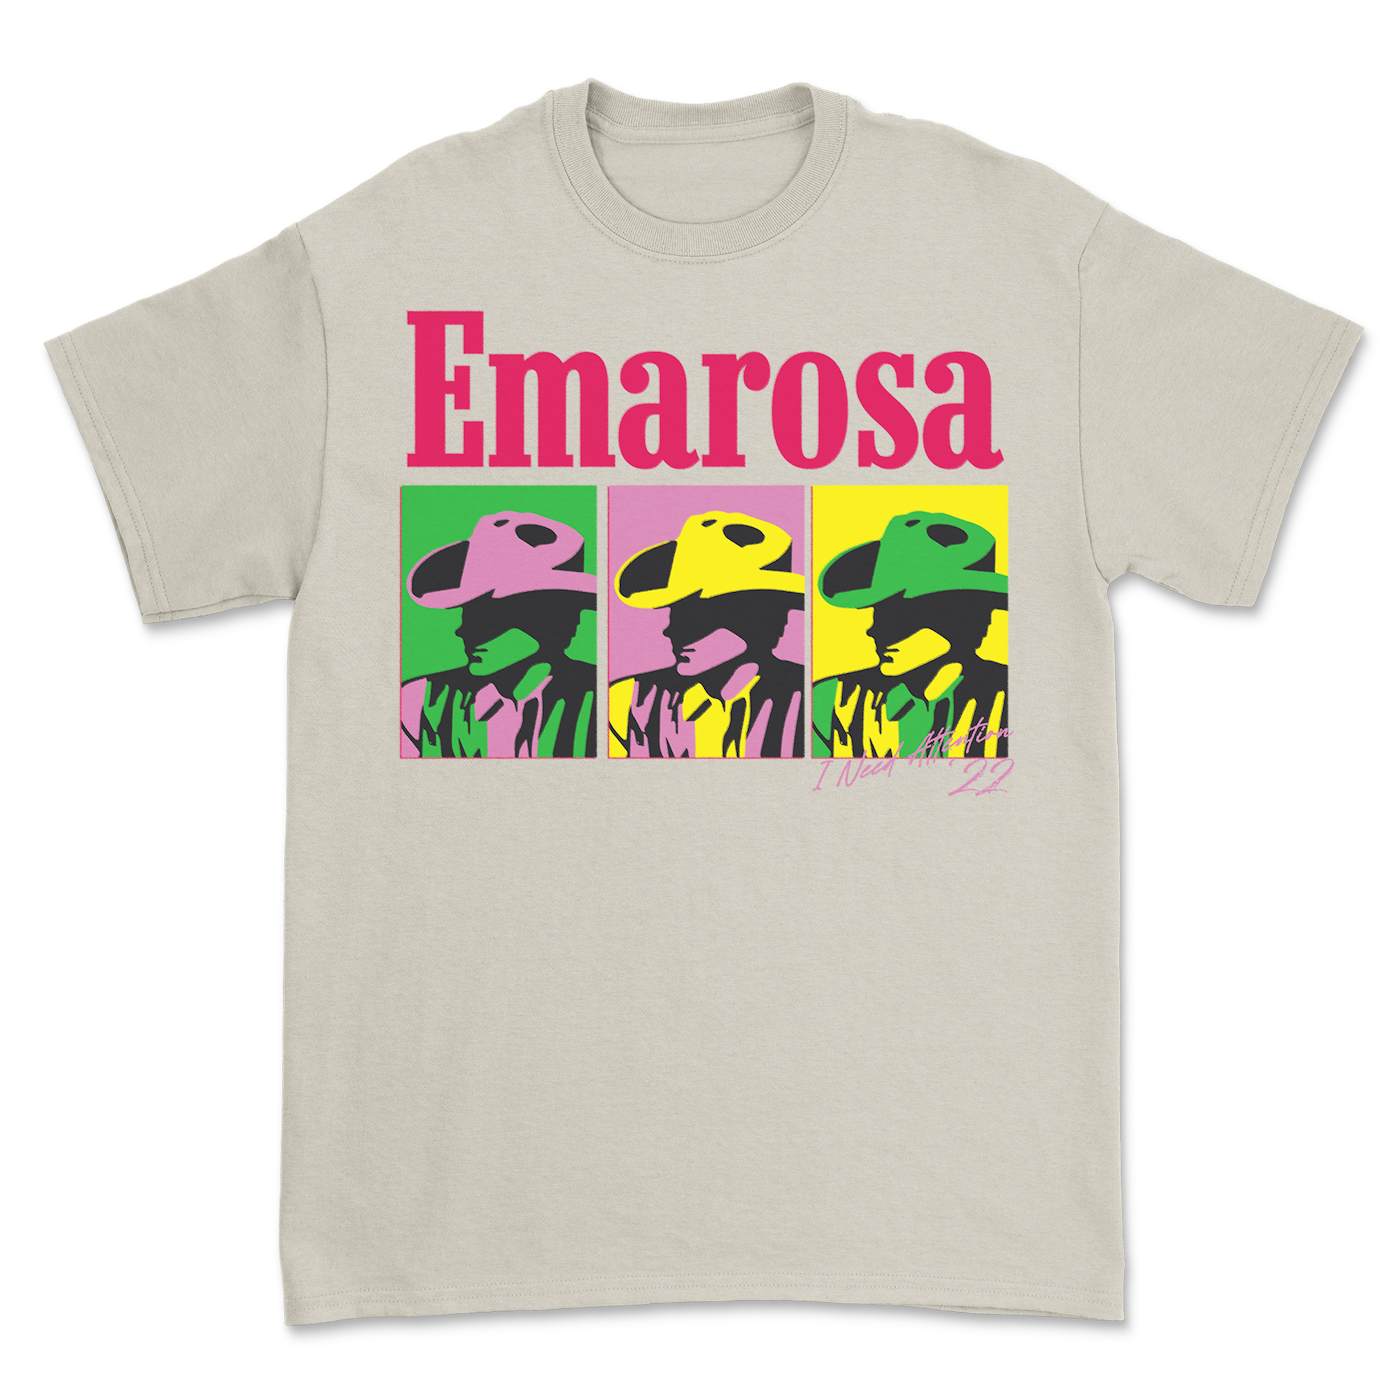 Emarosa - Cowboy T-Shirt (Natural)